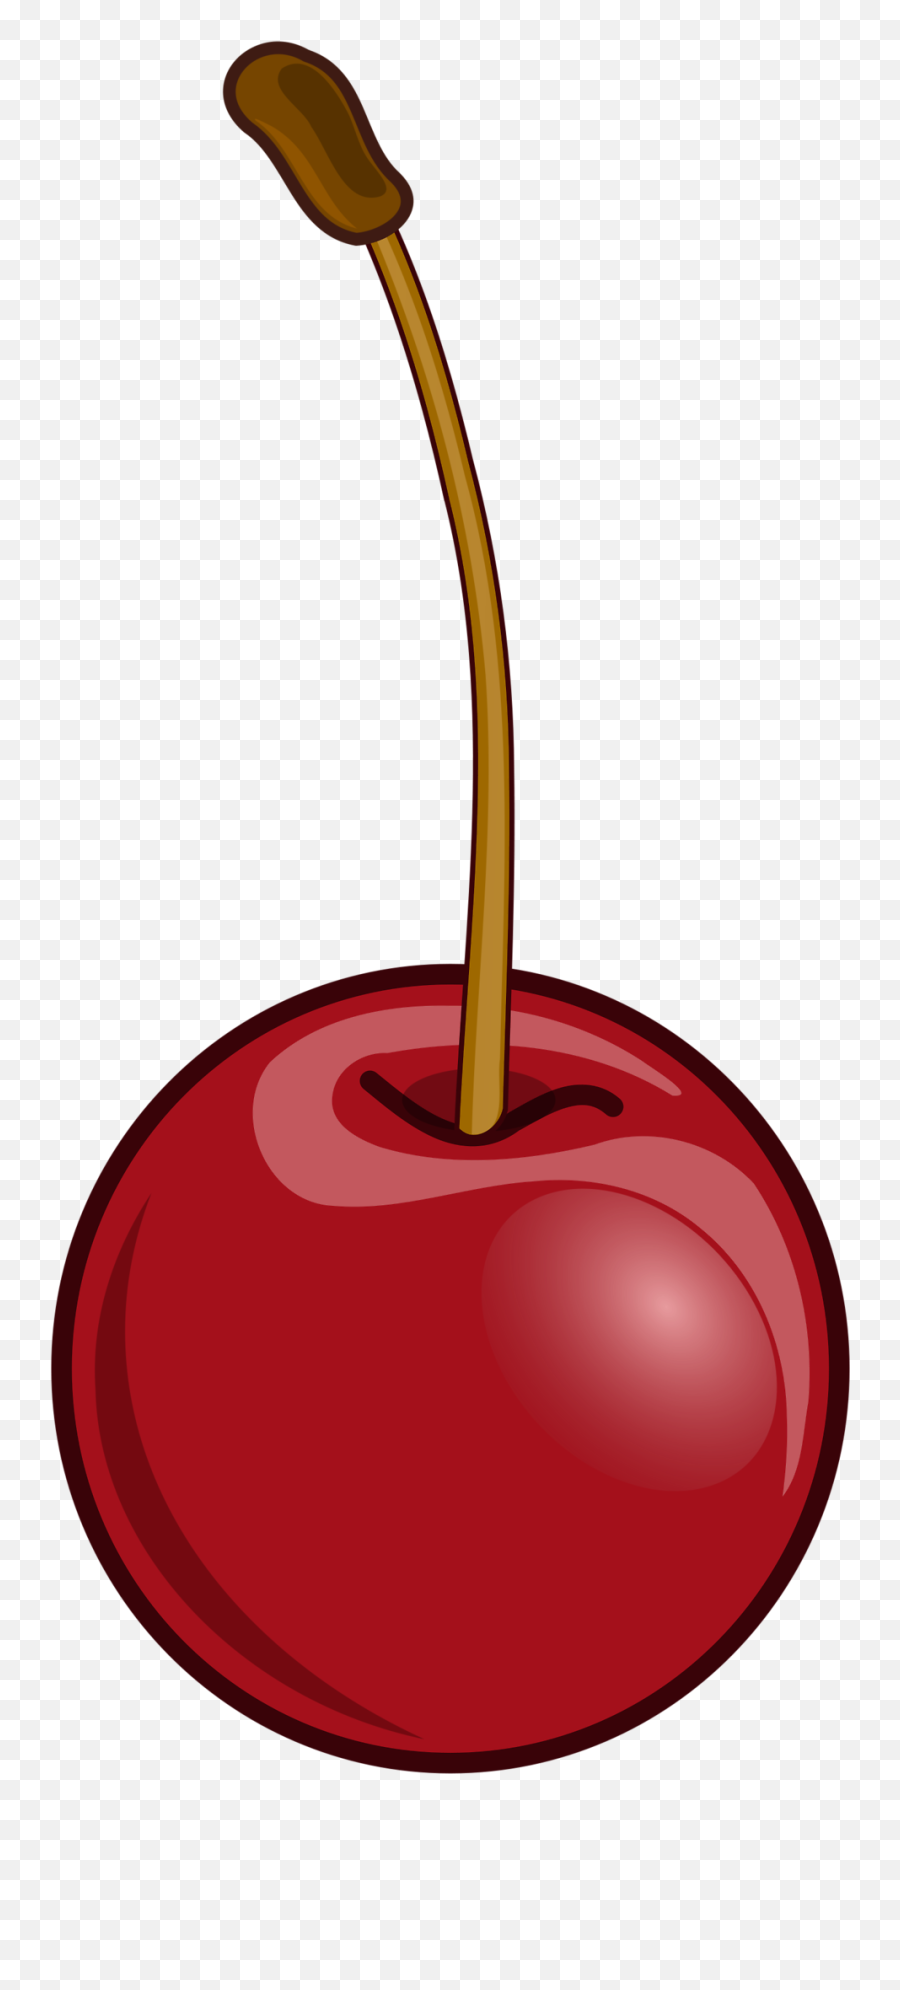 Free Stock Photo - Cherry Clip Art Emoji,Emoji Ice Cream Cake